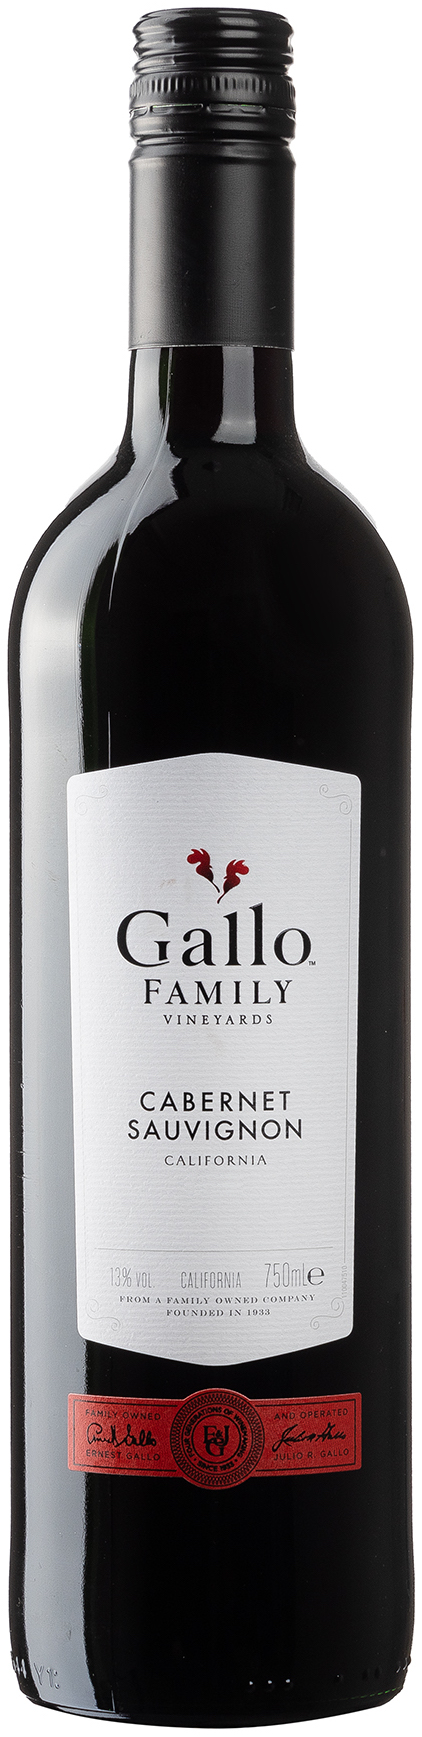 Gallo Cabernet Sauvignon California halbtrocken 13% vol. 0,75L